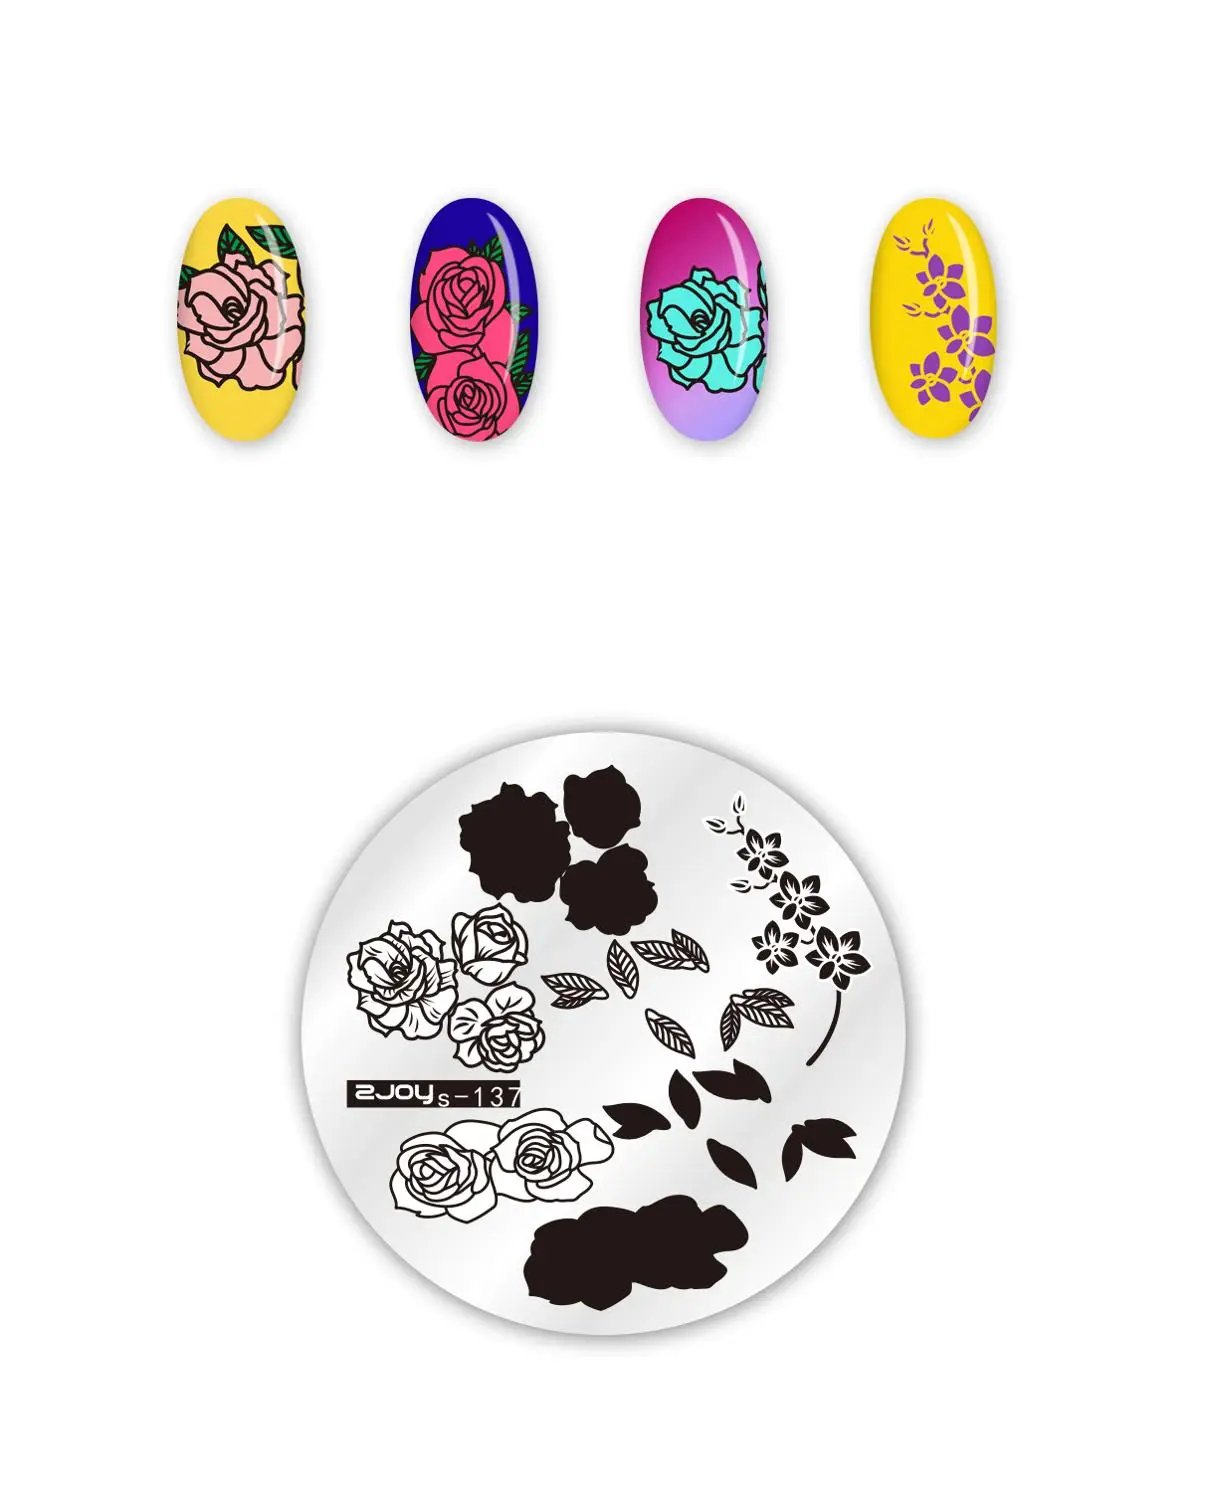 Стемпинг год Круглые штамповки для ногтей пластины цветок Геометрическая обезьяна дизайн ногтей трафареты для дизайна ногтей штамп шаблон - Цвет: zjoys137